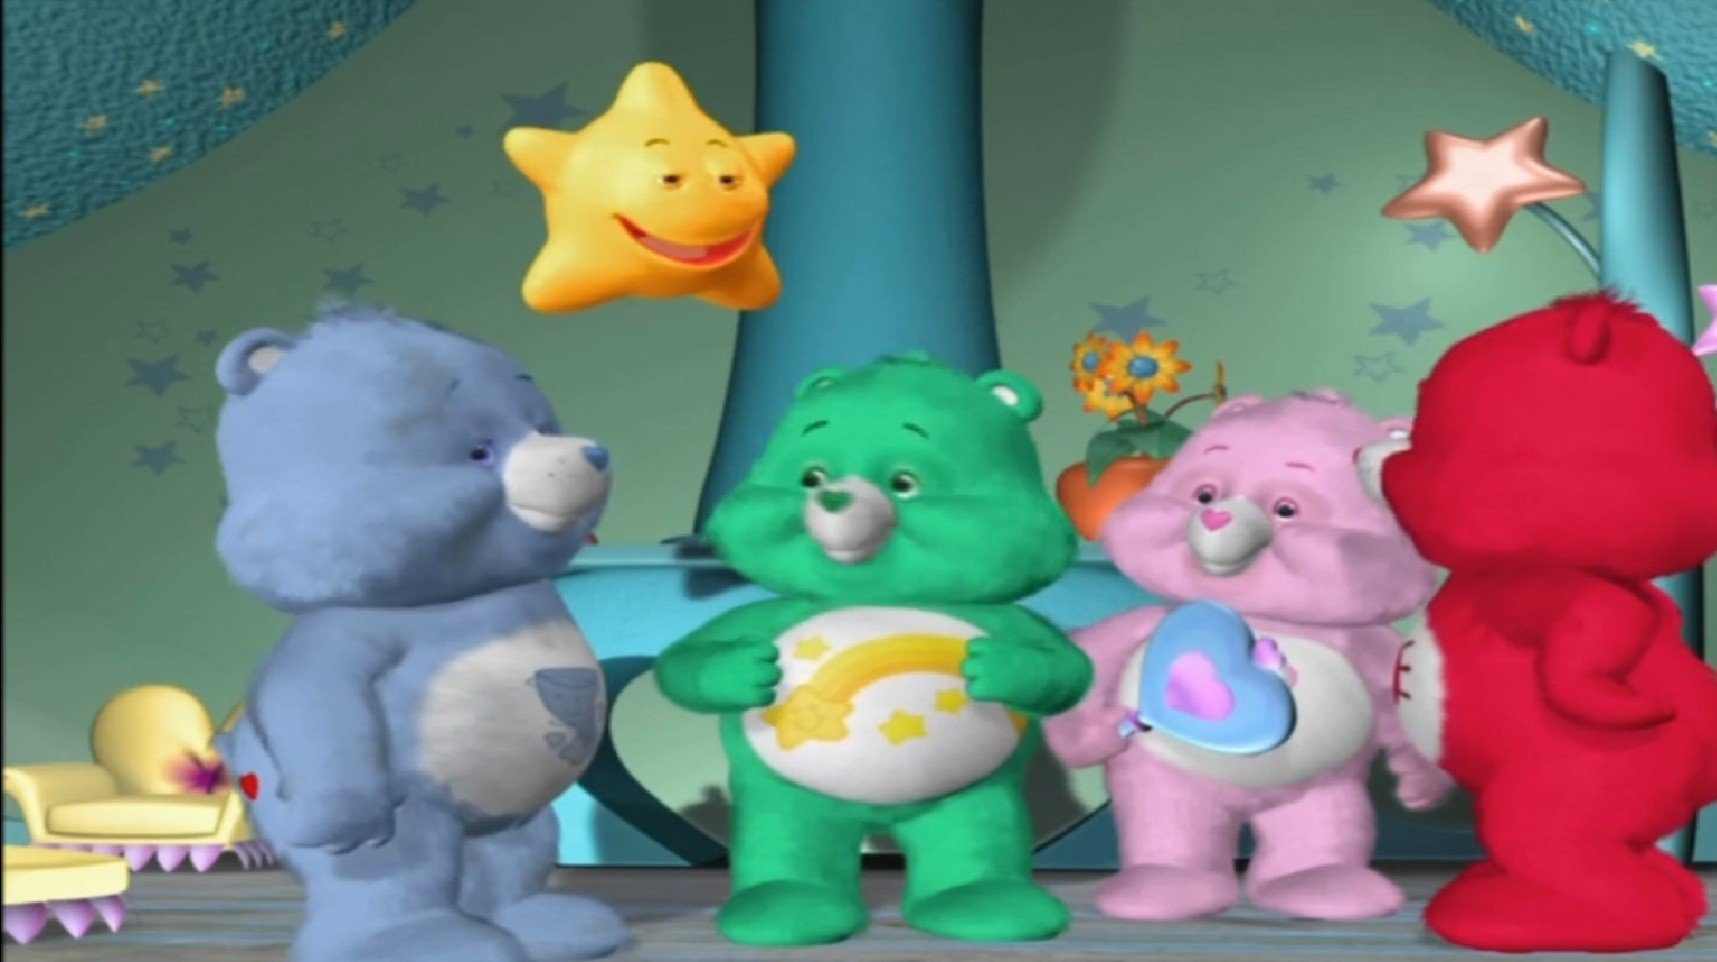 Care Bears: Big Wish Movie